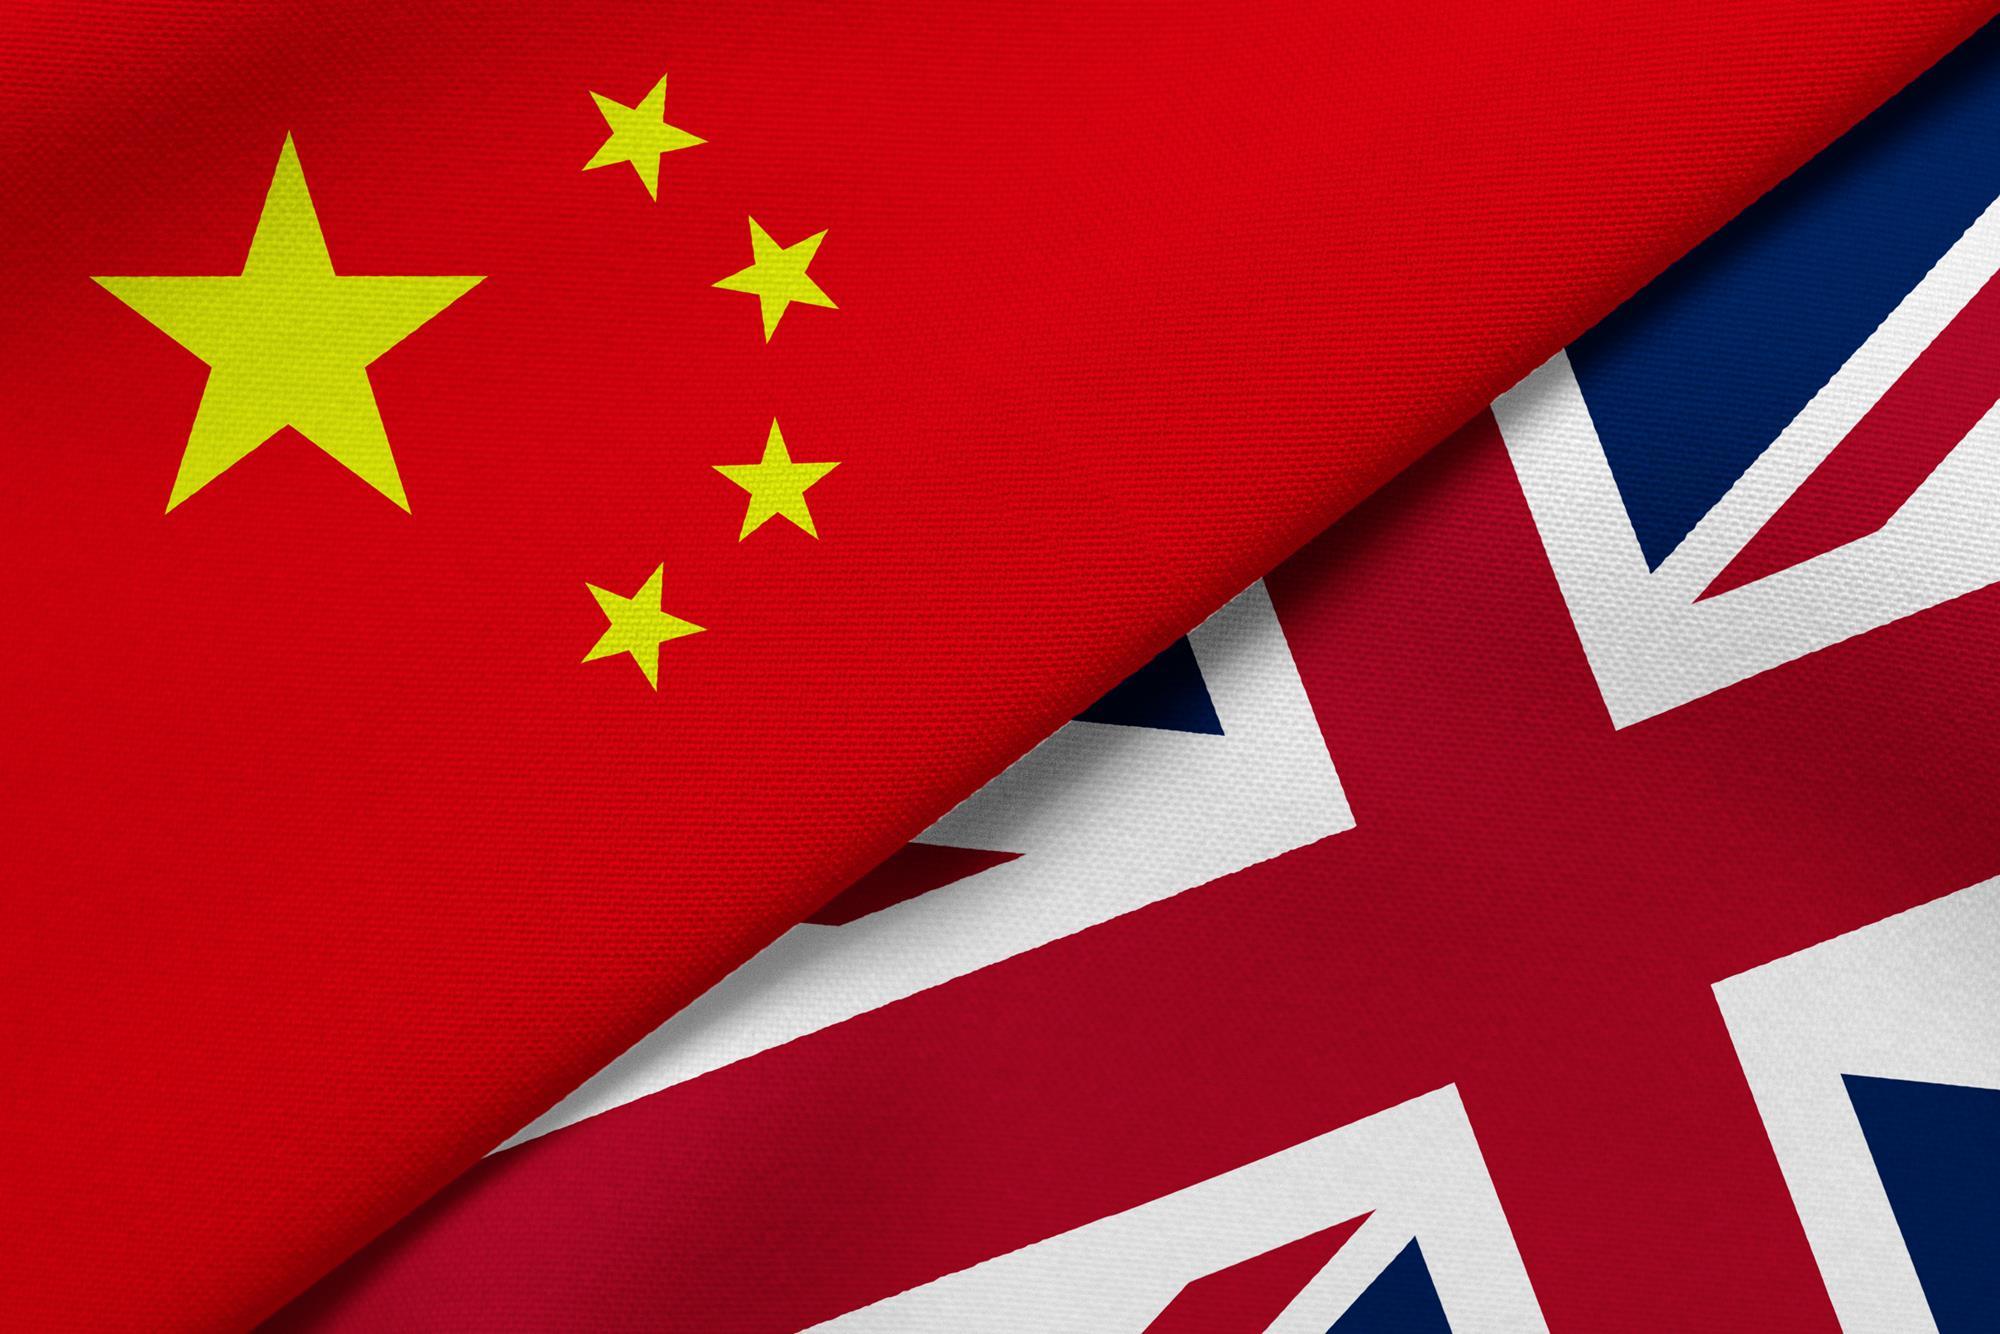 Βρετανία: «Περιμένουμε ότι η Κίνα θα σεβαστεί τις ελευθερίες και την αυτονομία του Χονγκ Κονγκ»